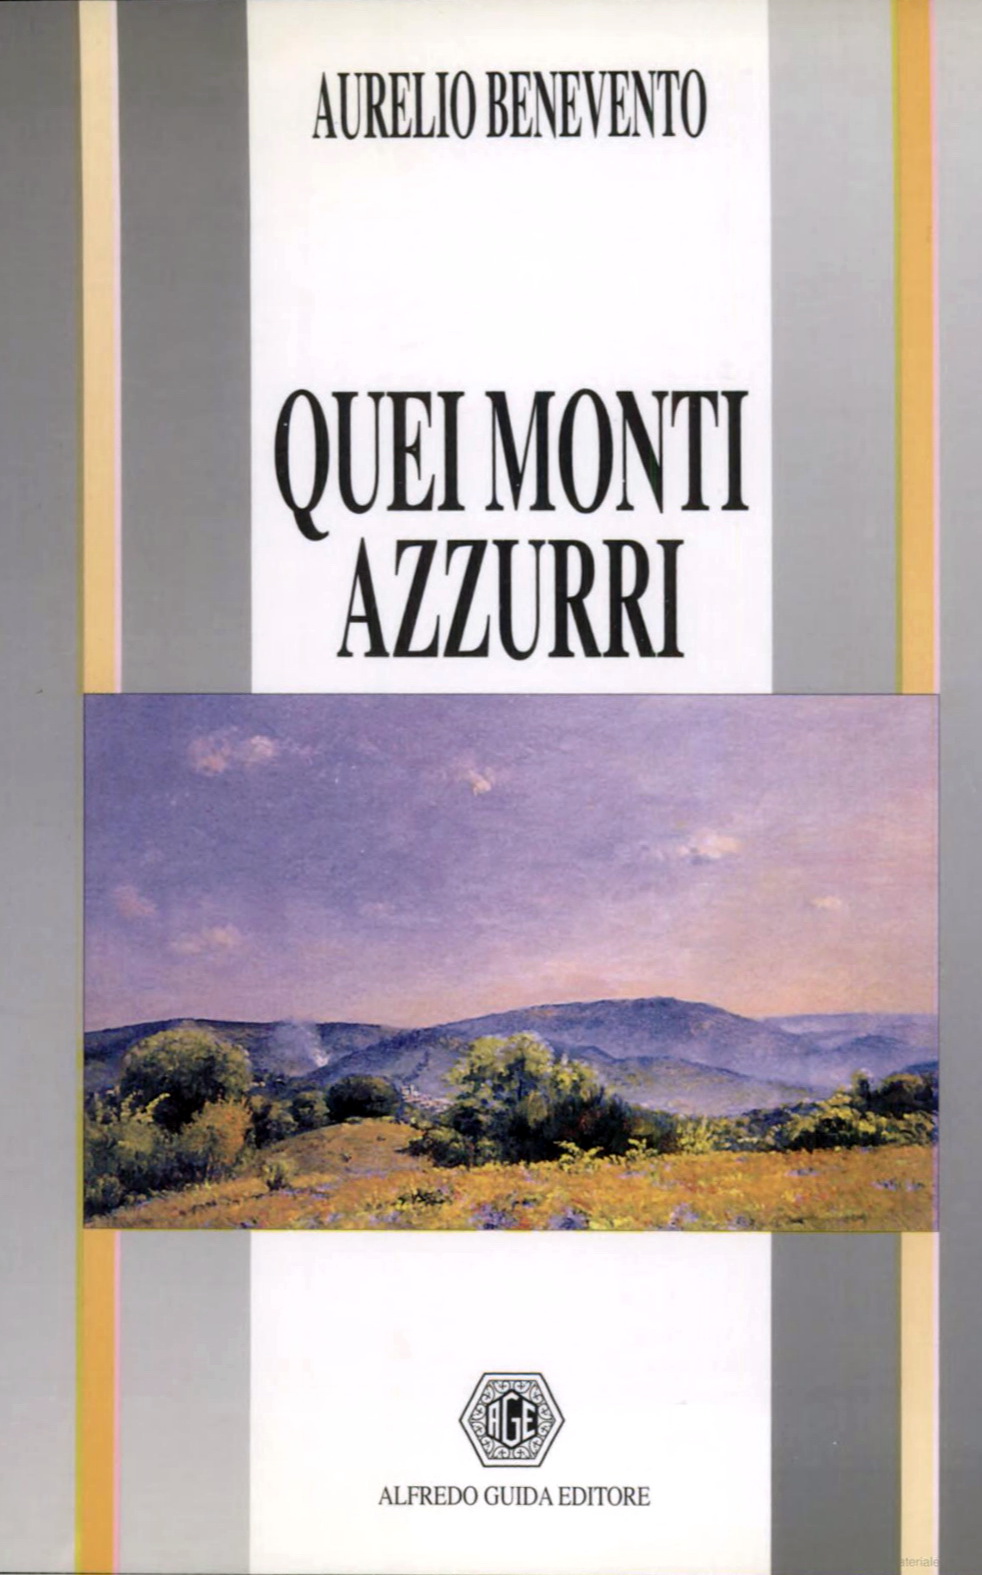 Aurelio Benevento, Quei monti azzurri, copertina